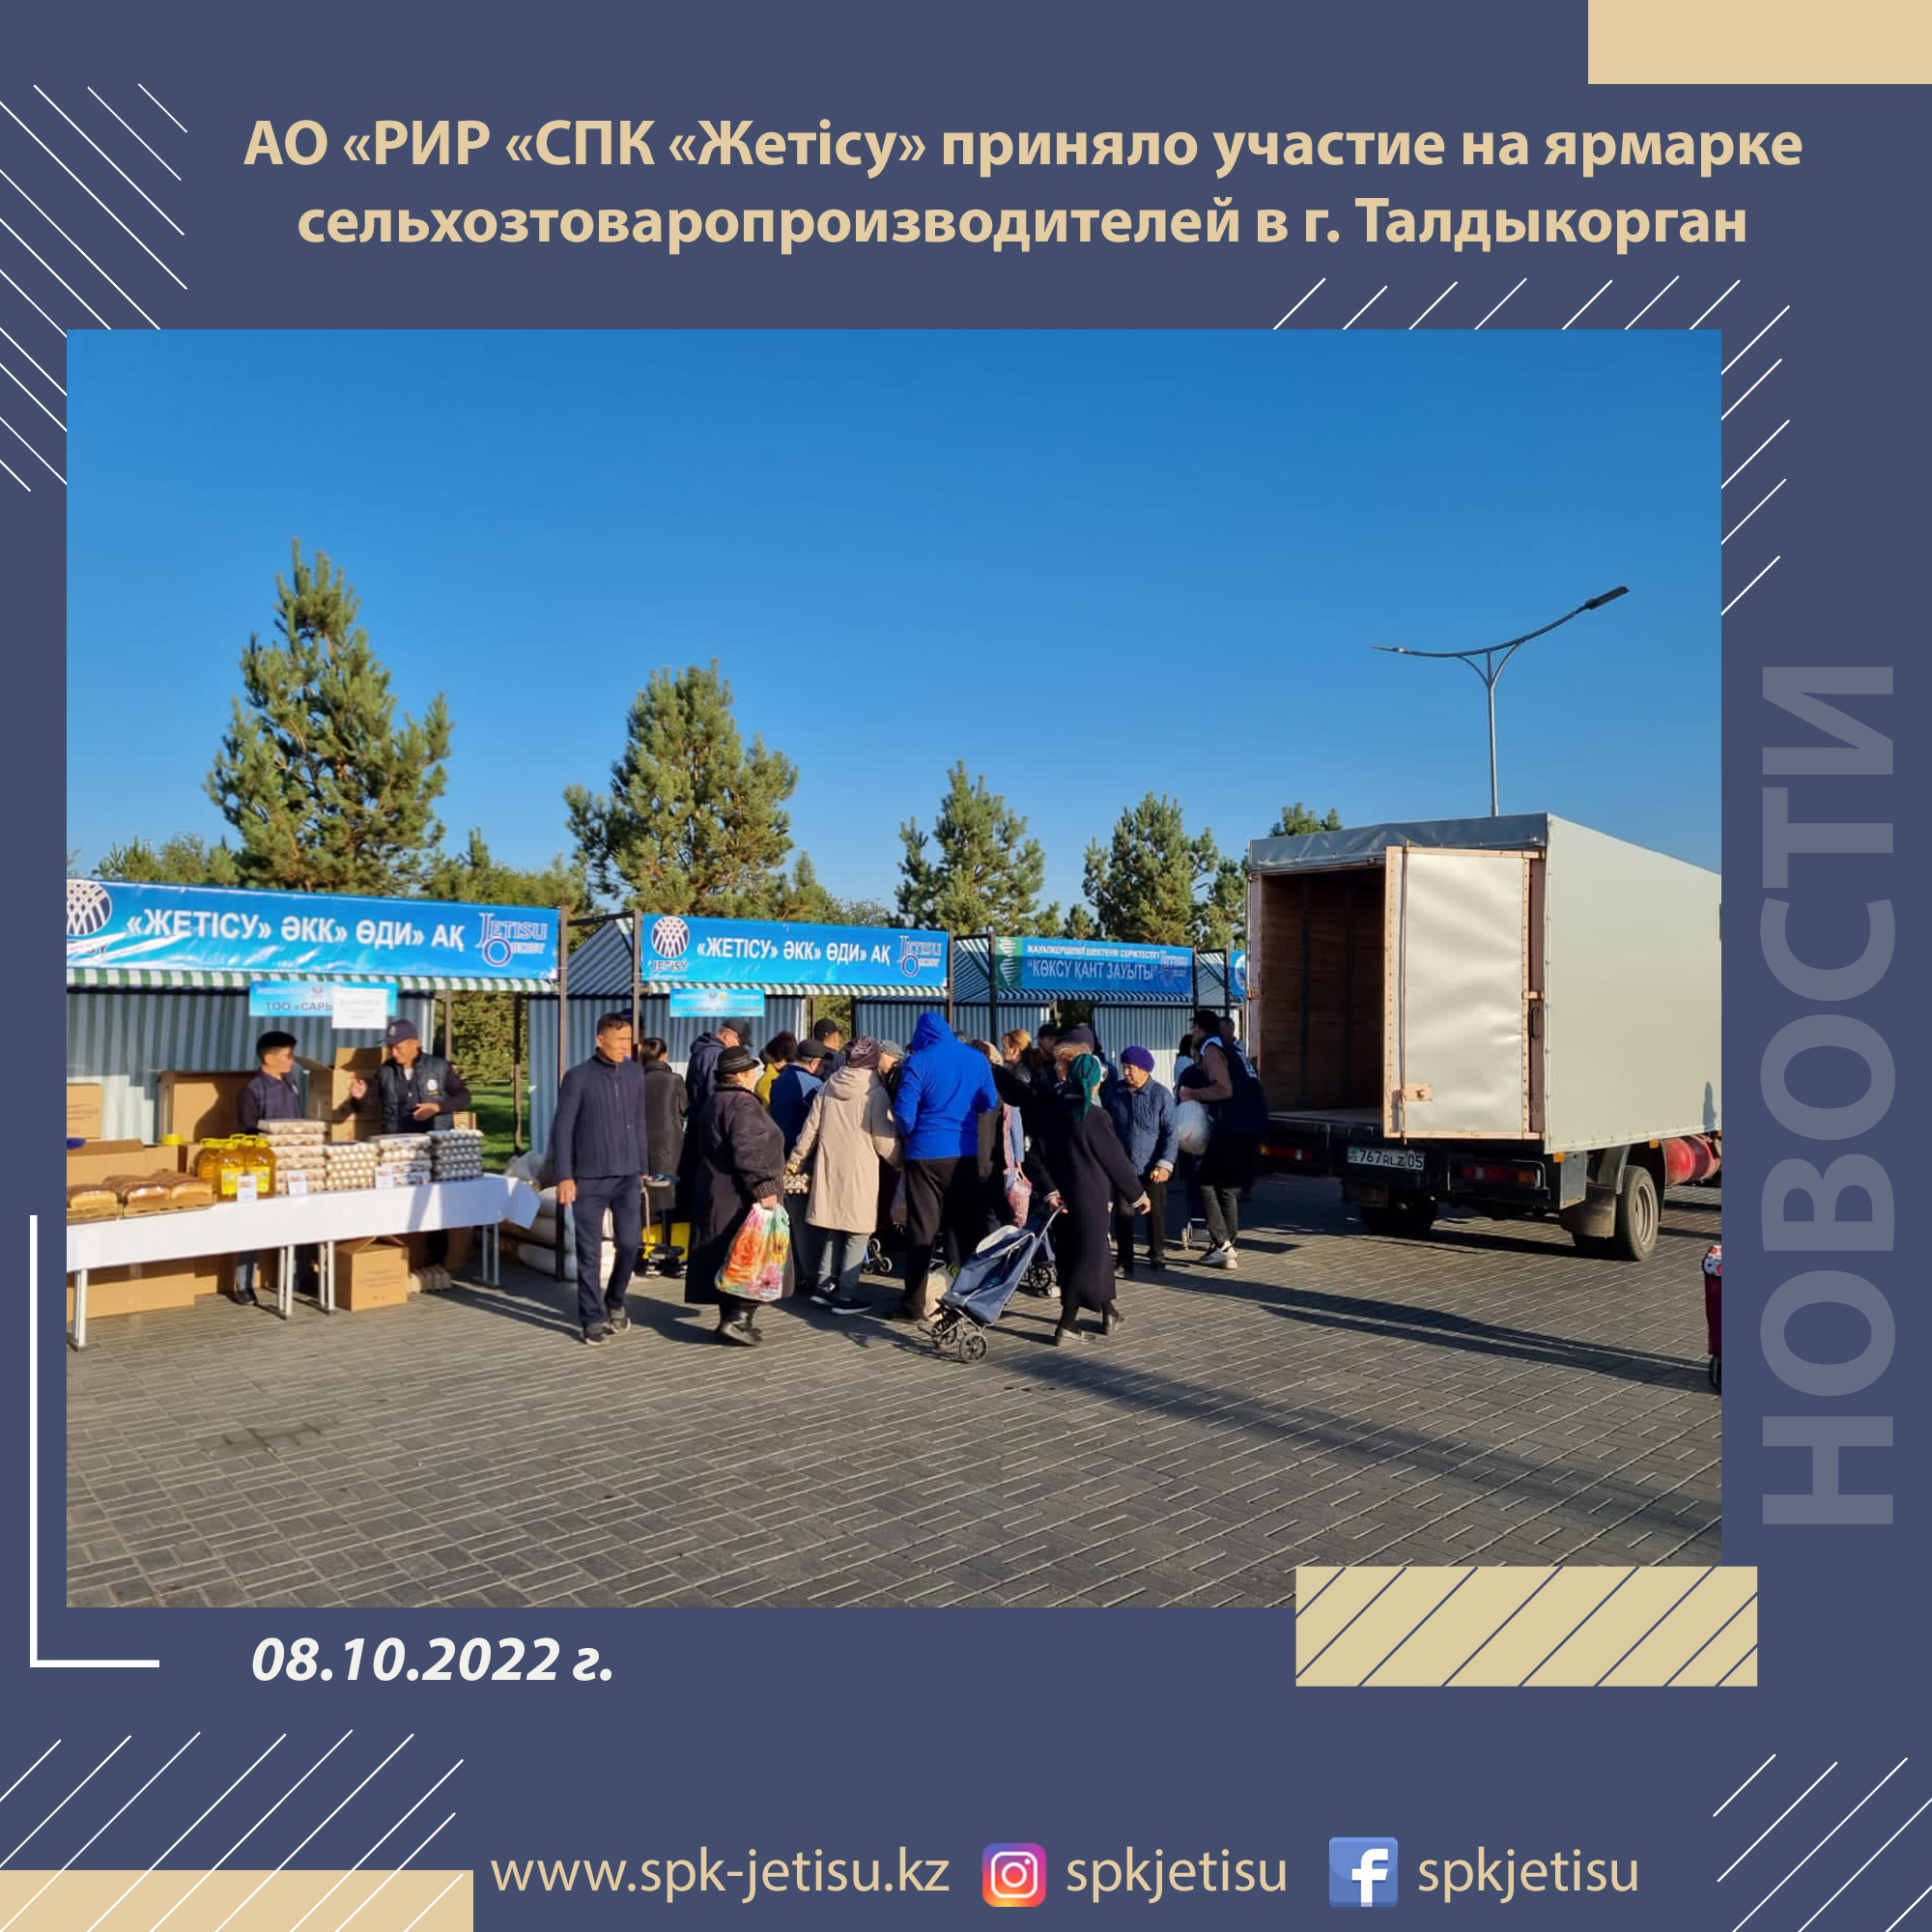 АО «РИР «СПК «Жетісу» приняло участие на ярмарке сельхозтоваропроизводителей в г. Талдыкорган 8 октября 2022 года